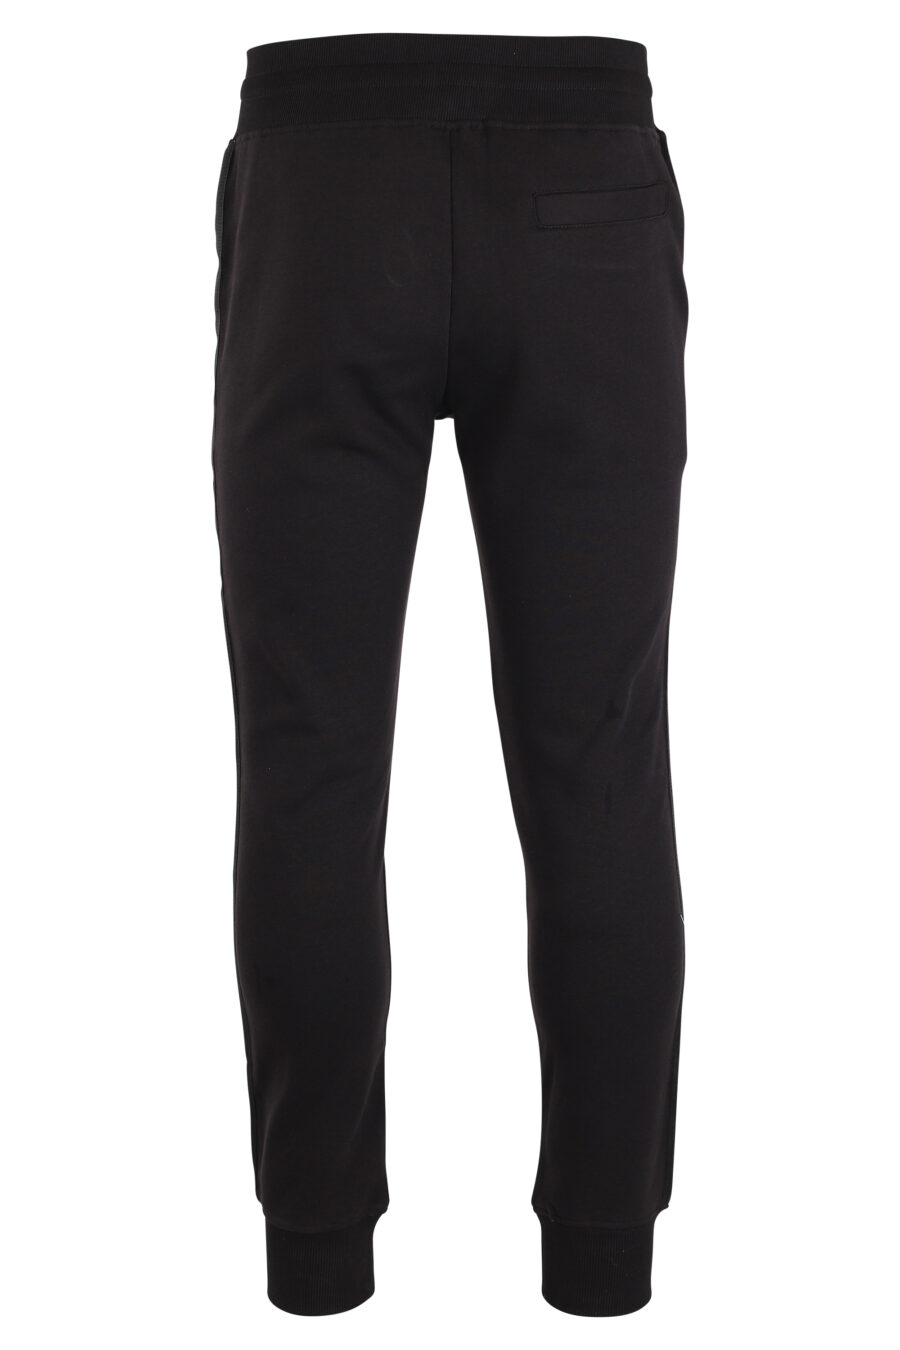 Pantalón de chandal negro con mini logo vertical - IMG 4090